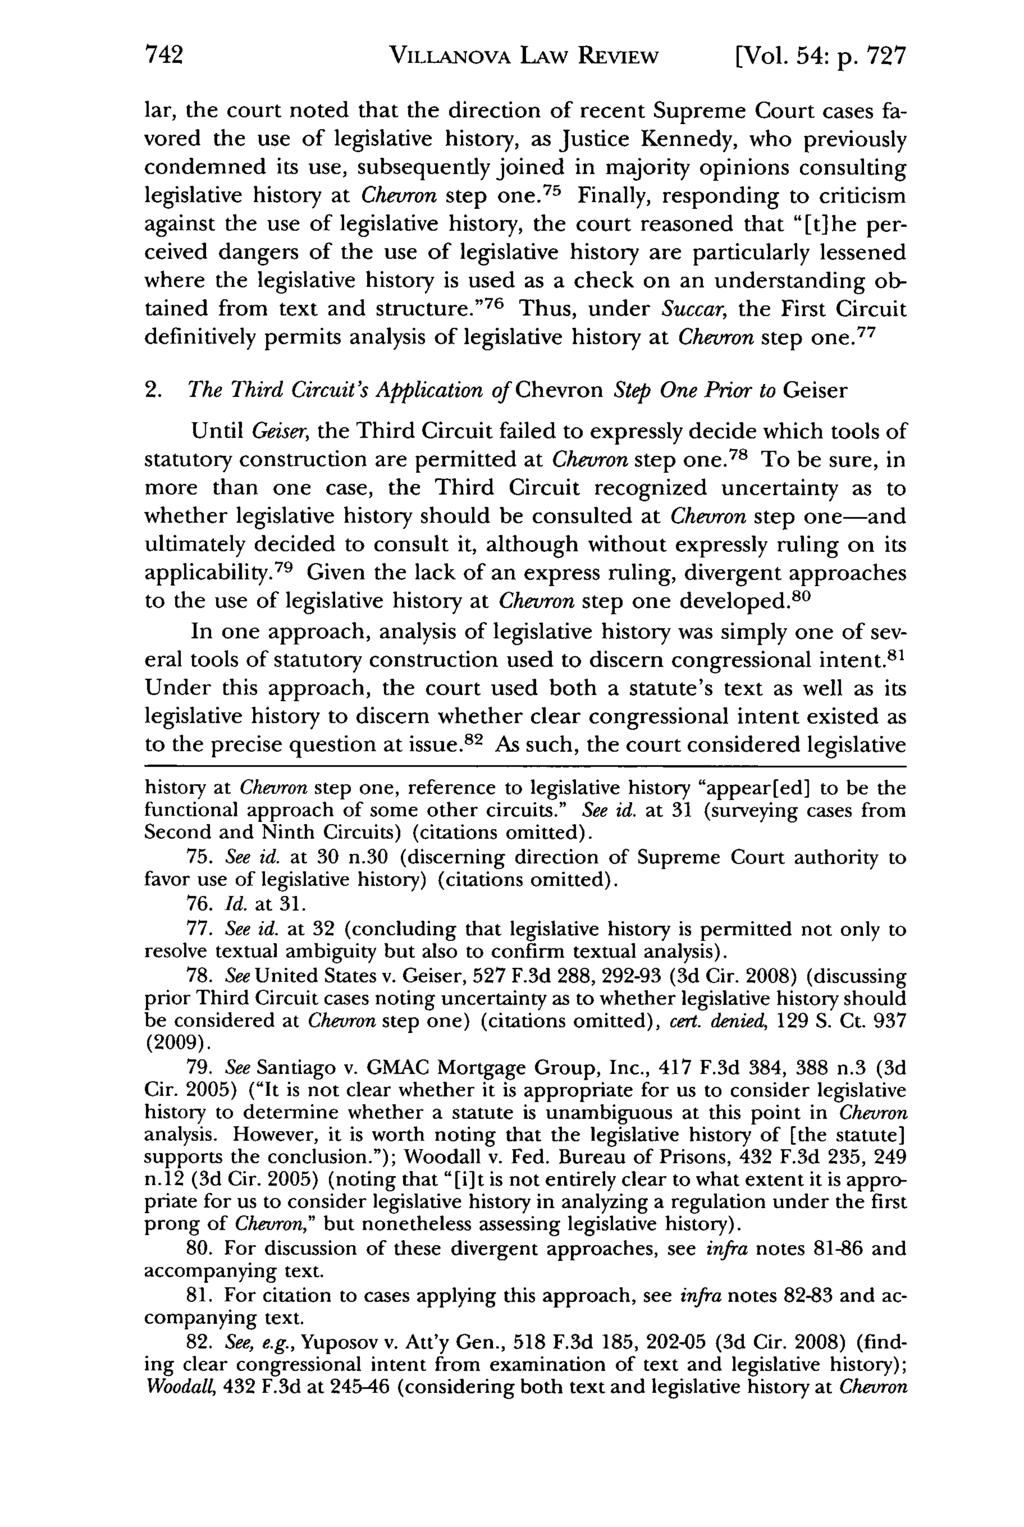 Villanova VILLANOVA Law Review, Vol. LAW 54, Iss. REVIEW 5 [2009], Art. 2 [Vol. 54: p.